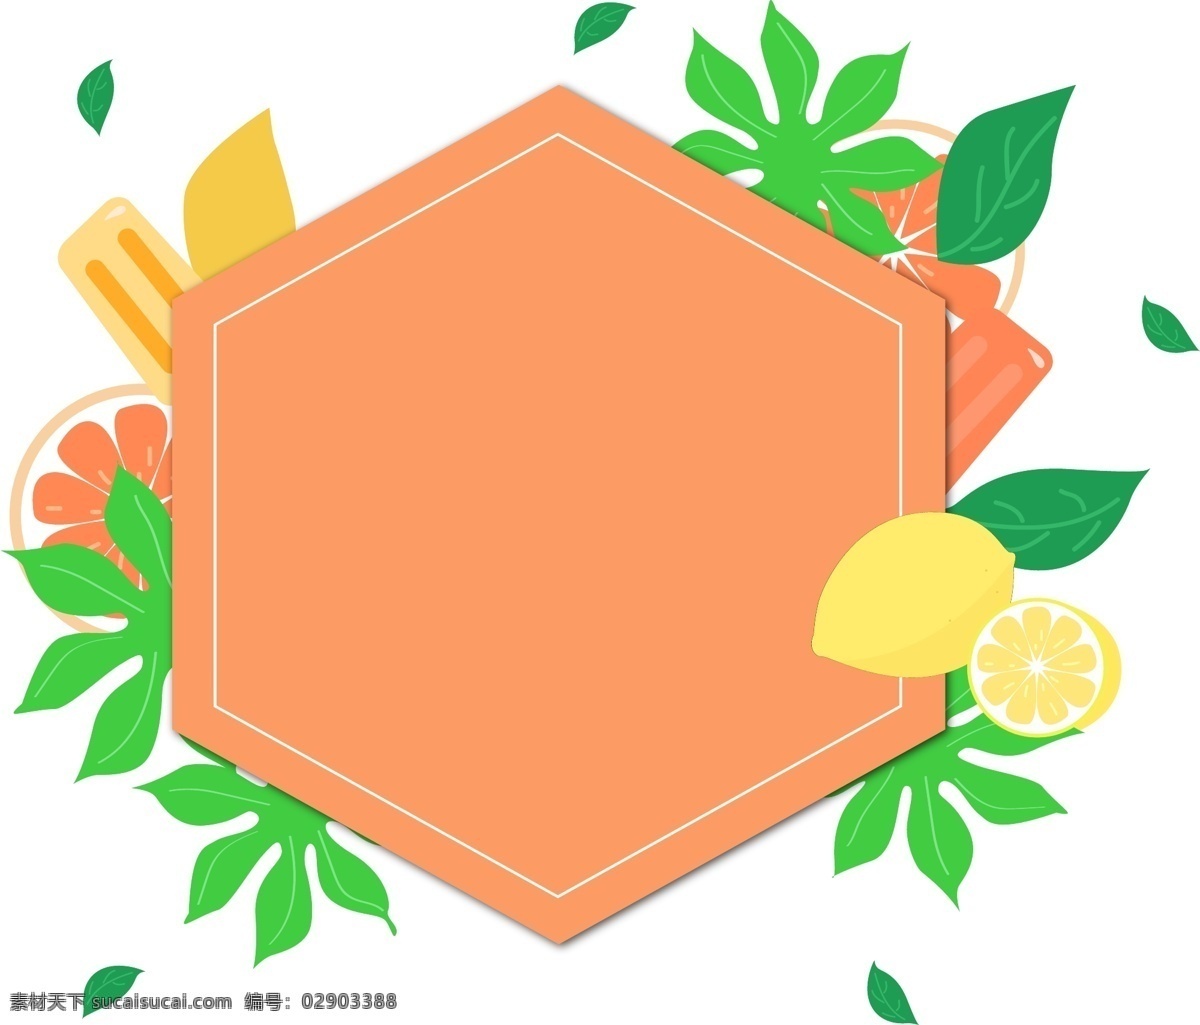 矢量 手绘 水果 树叶 边框 苹果 西瓜 橘子 香蕉 菠萝 葡萄 西红柿 梨 橙子 草莓 柠檬 柚子